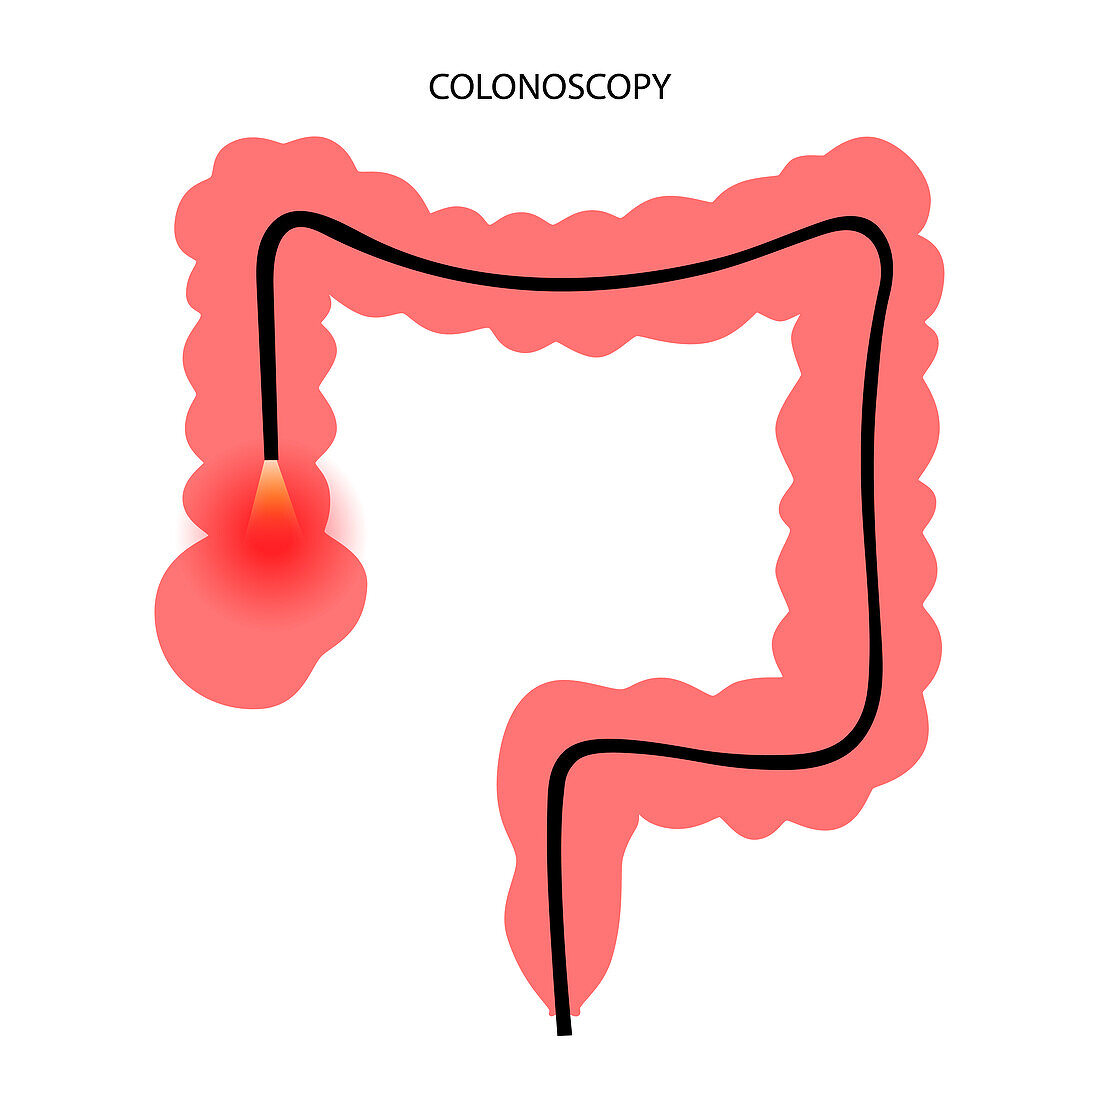 Colonoscopy, illustration